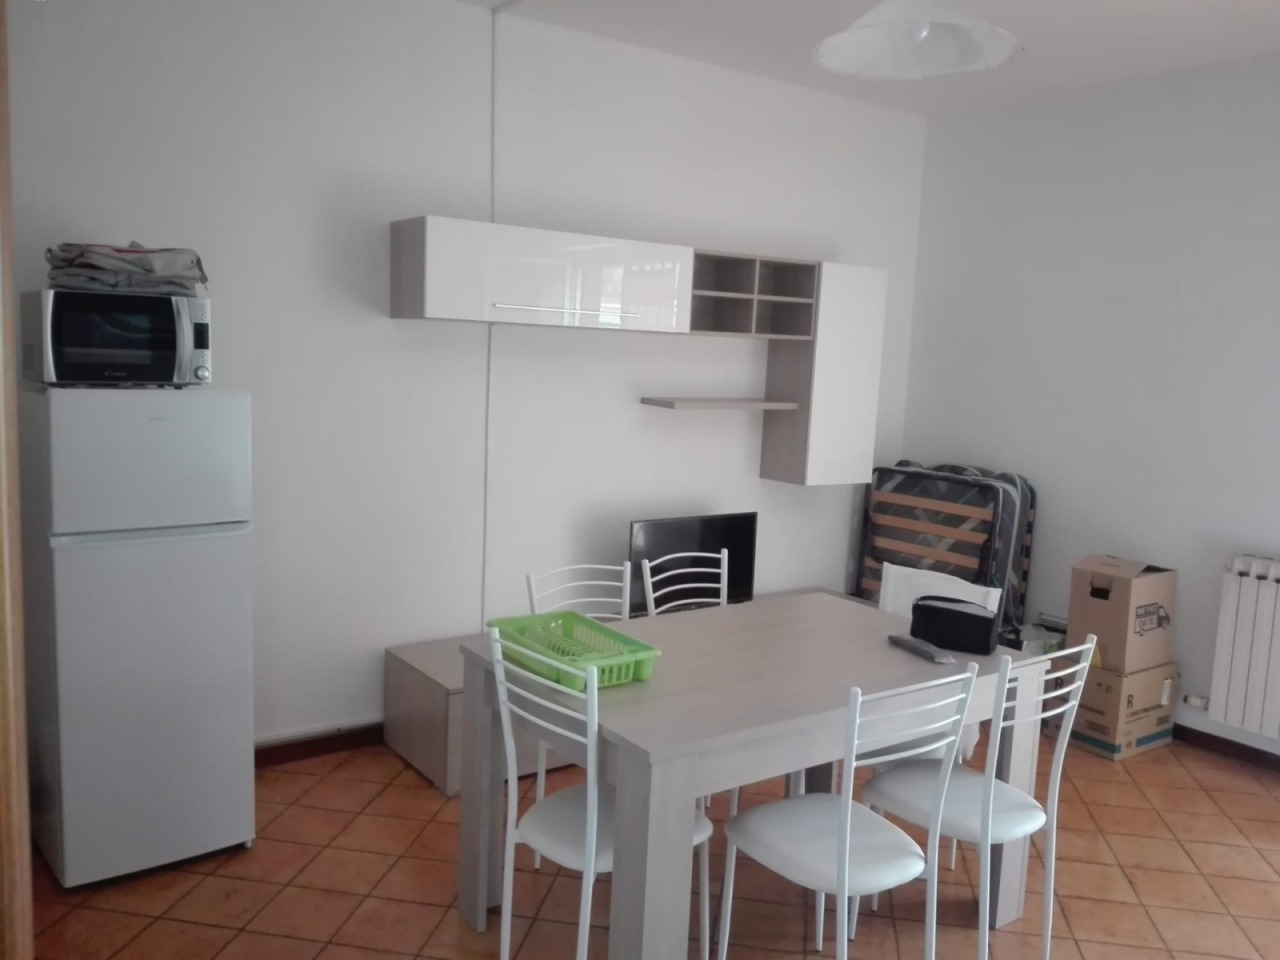 Appartamento in affitto a Loano, 3 locali, prezzo € 400 | PortaleAgenzieImmobiliari.it